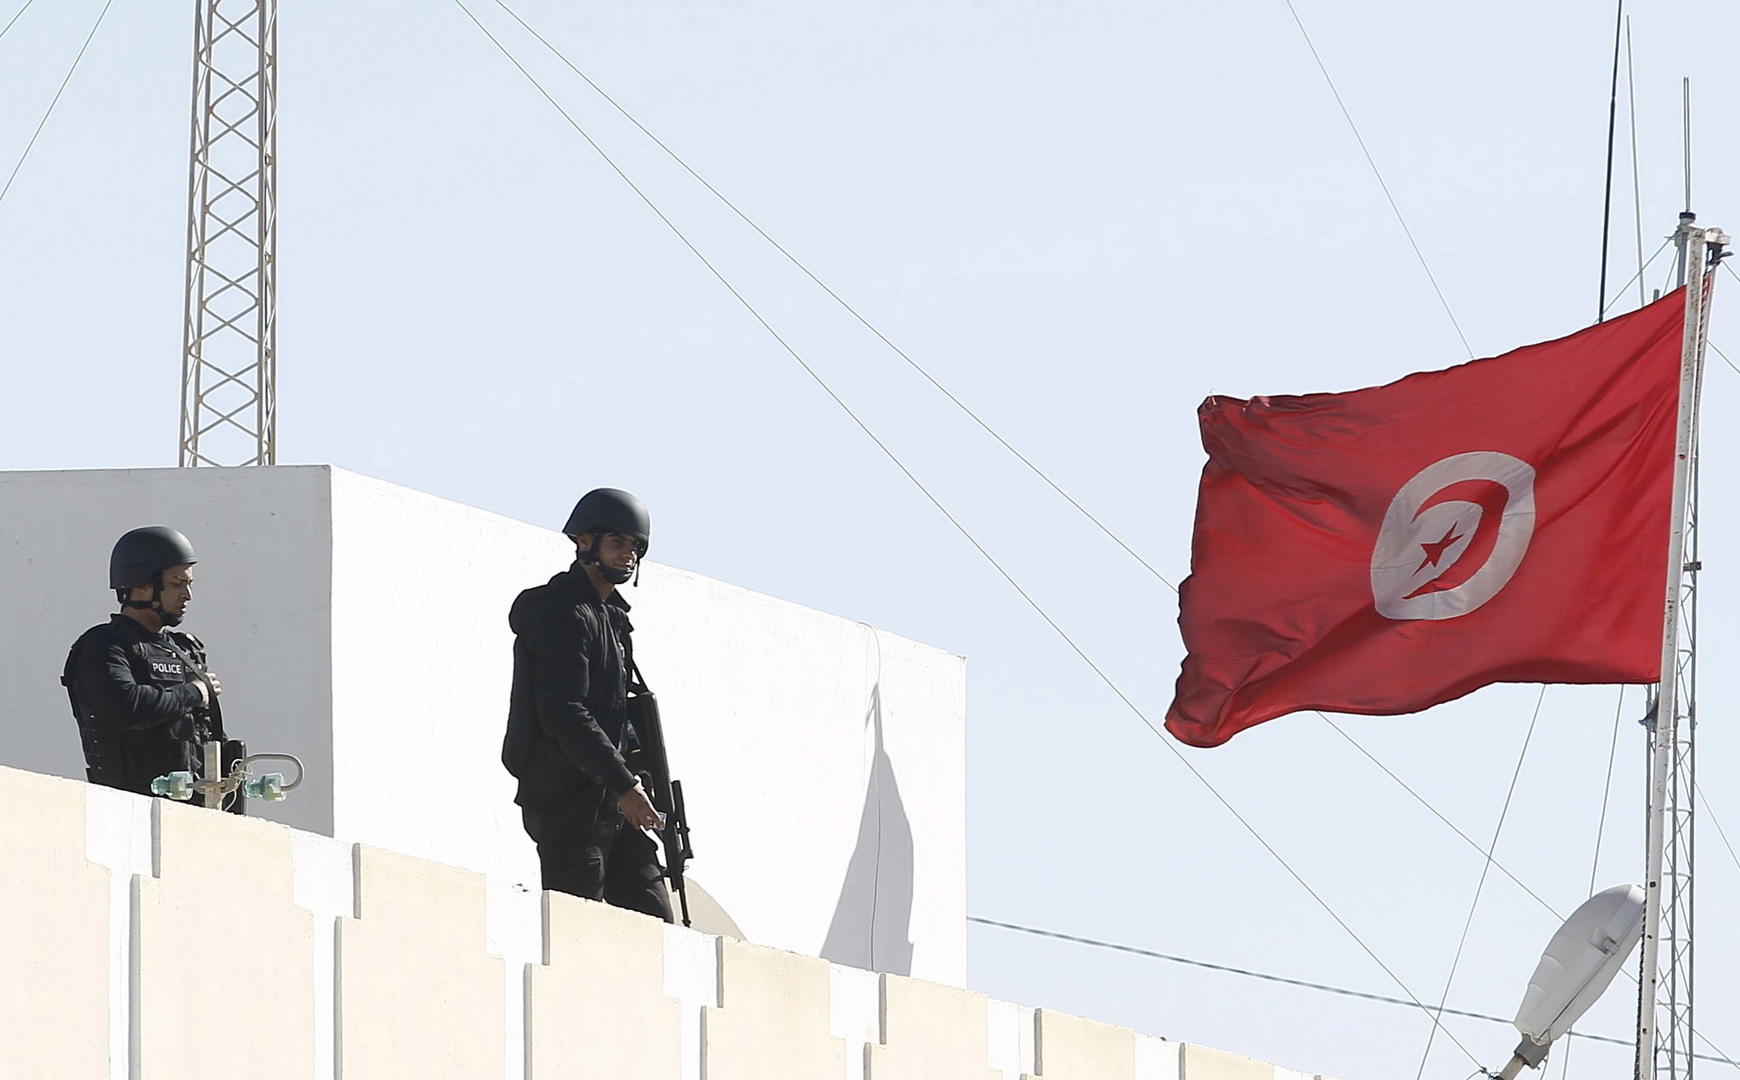 تحطم طائرة عسكرية تونسية جنوبي البلاد وأنباء عن مقتل قائدها (صورة)